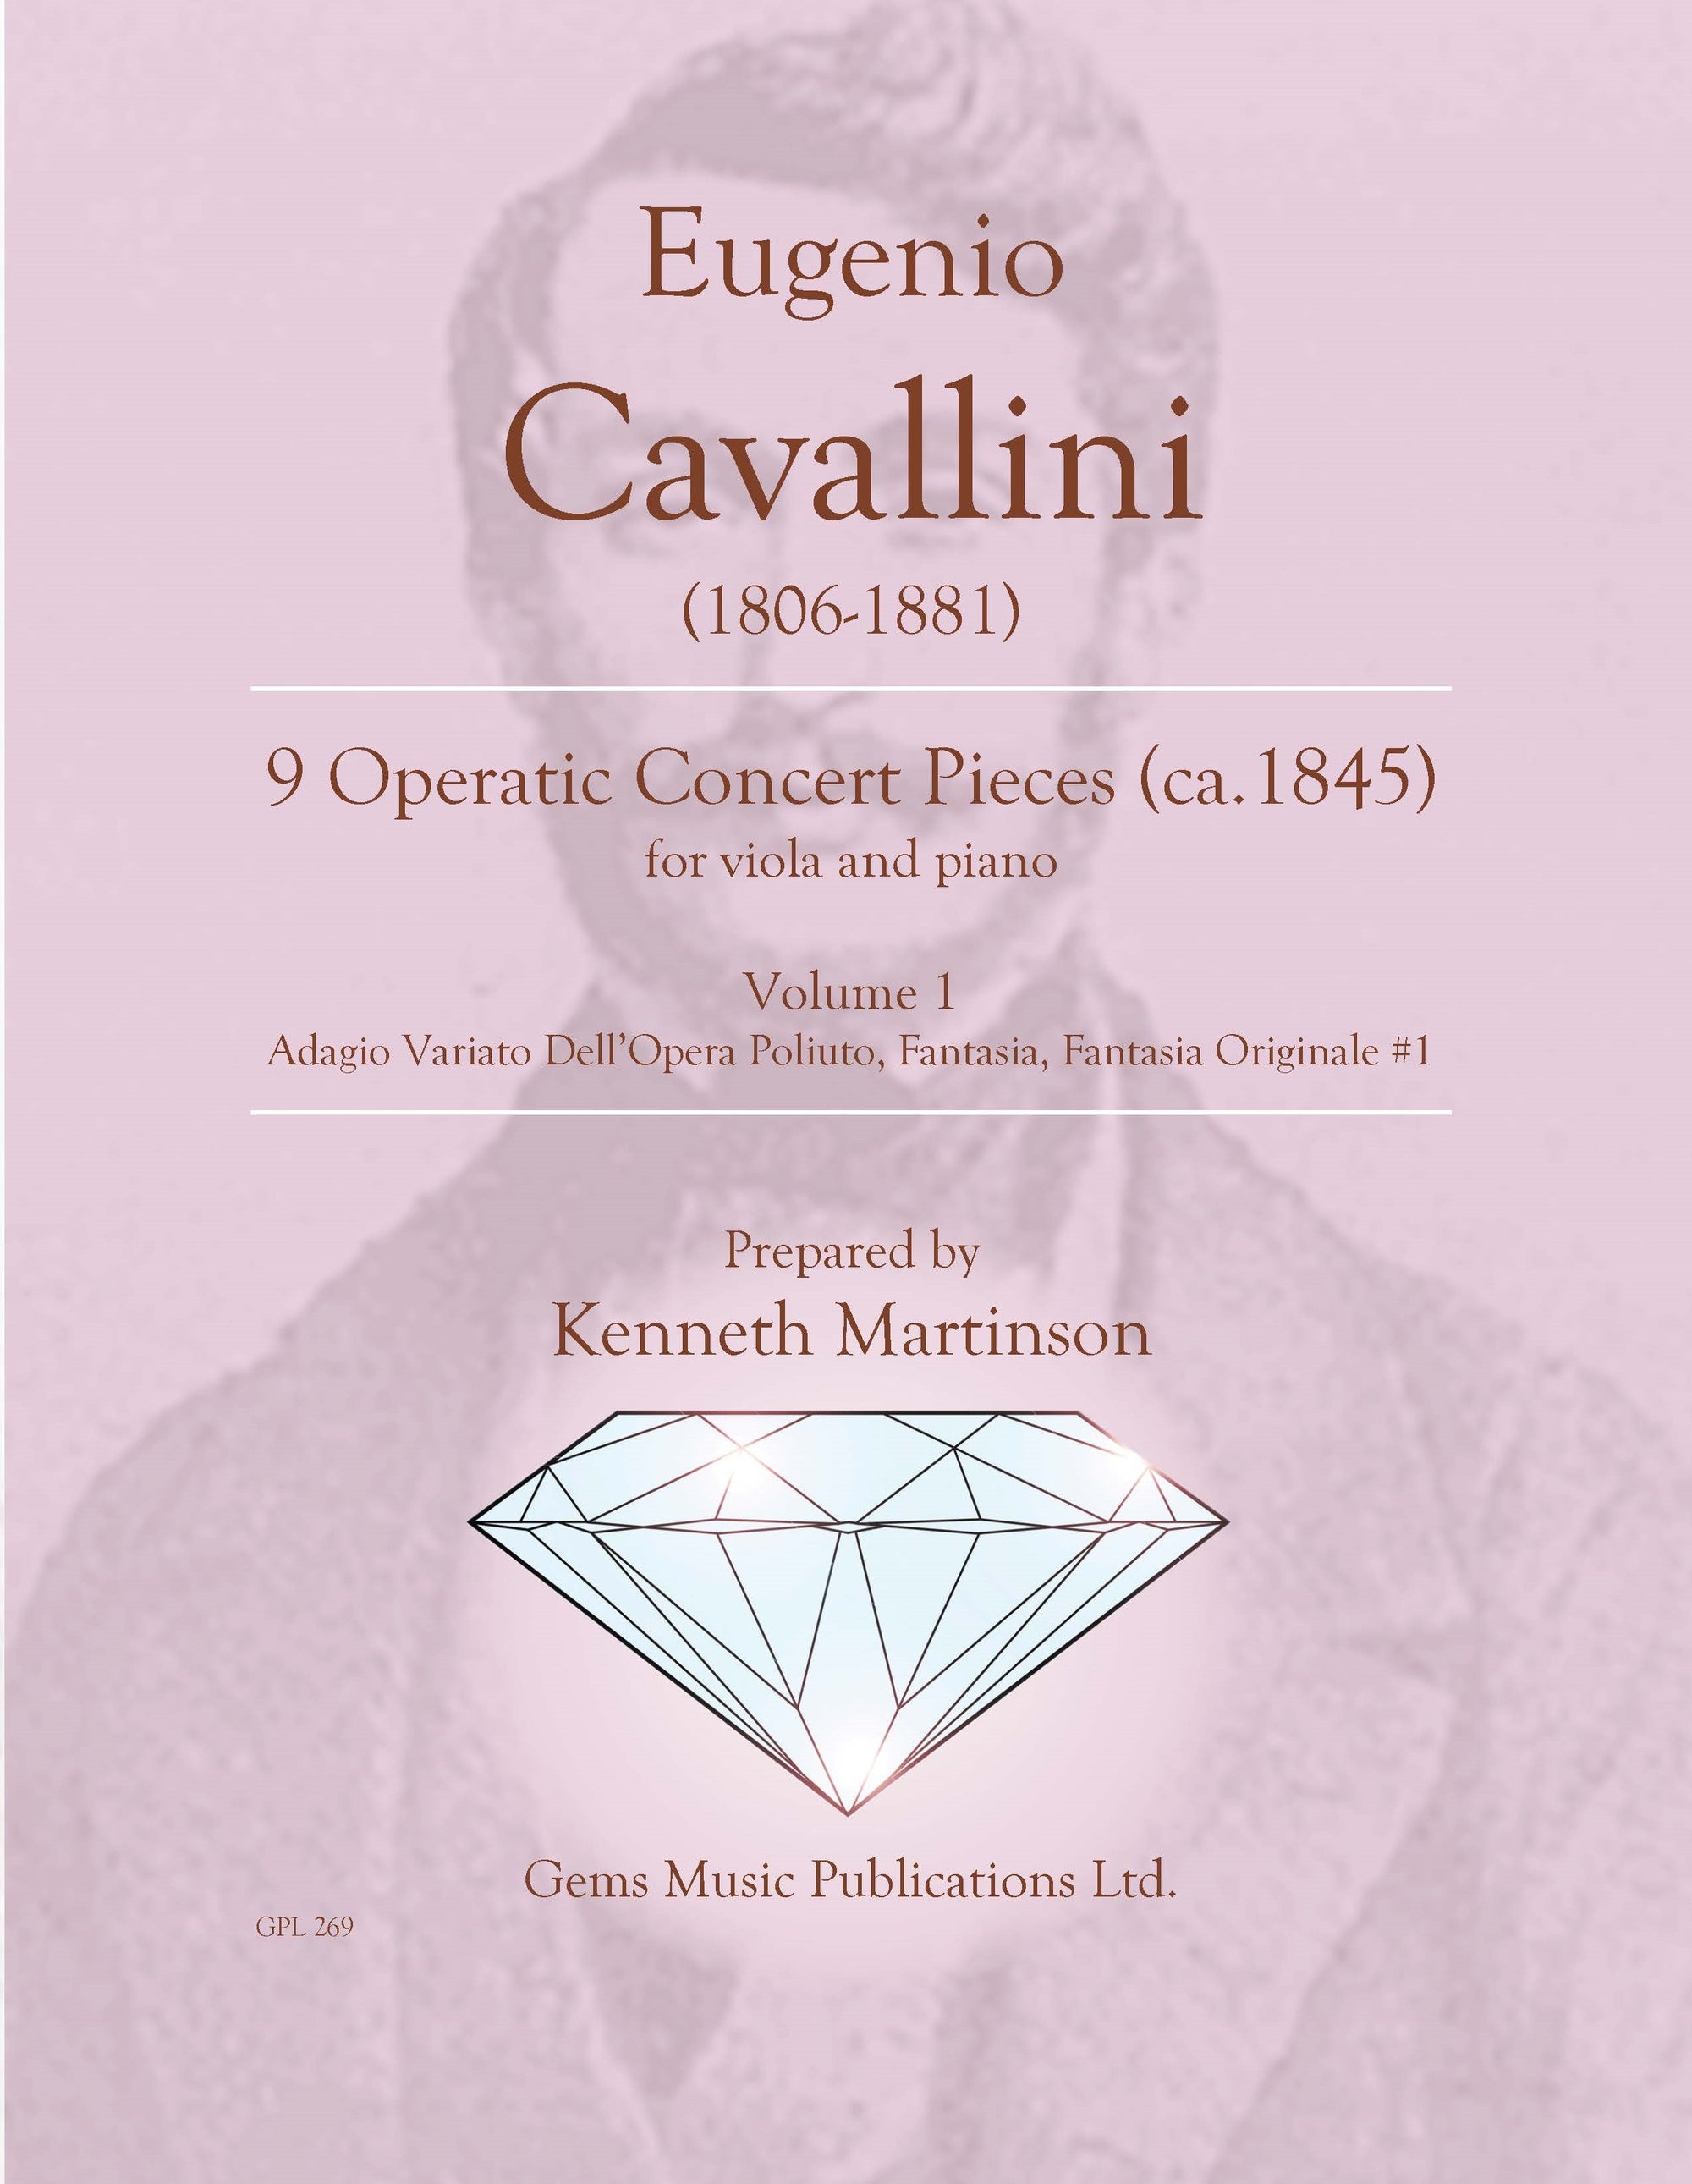 Cavallini: Operatic Concert Pieces - Volume 1